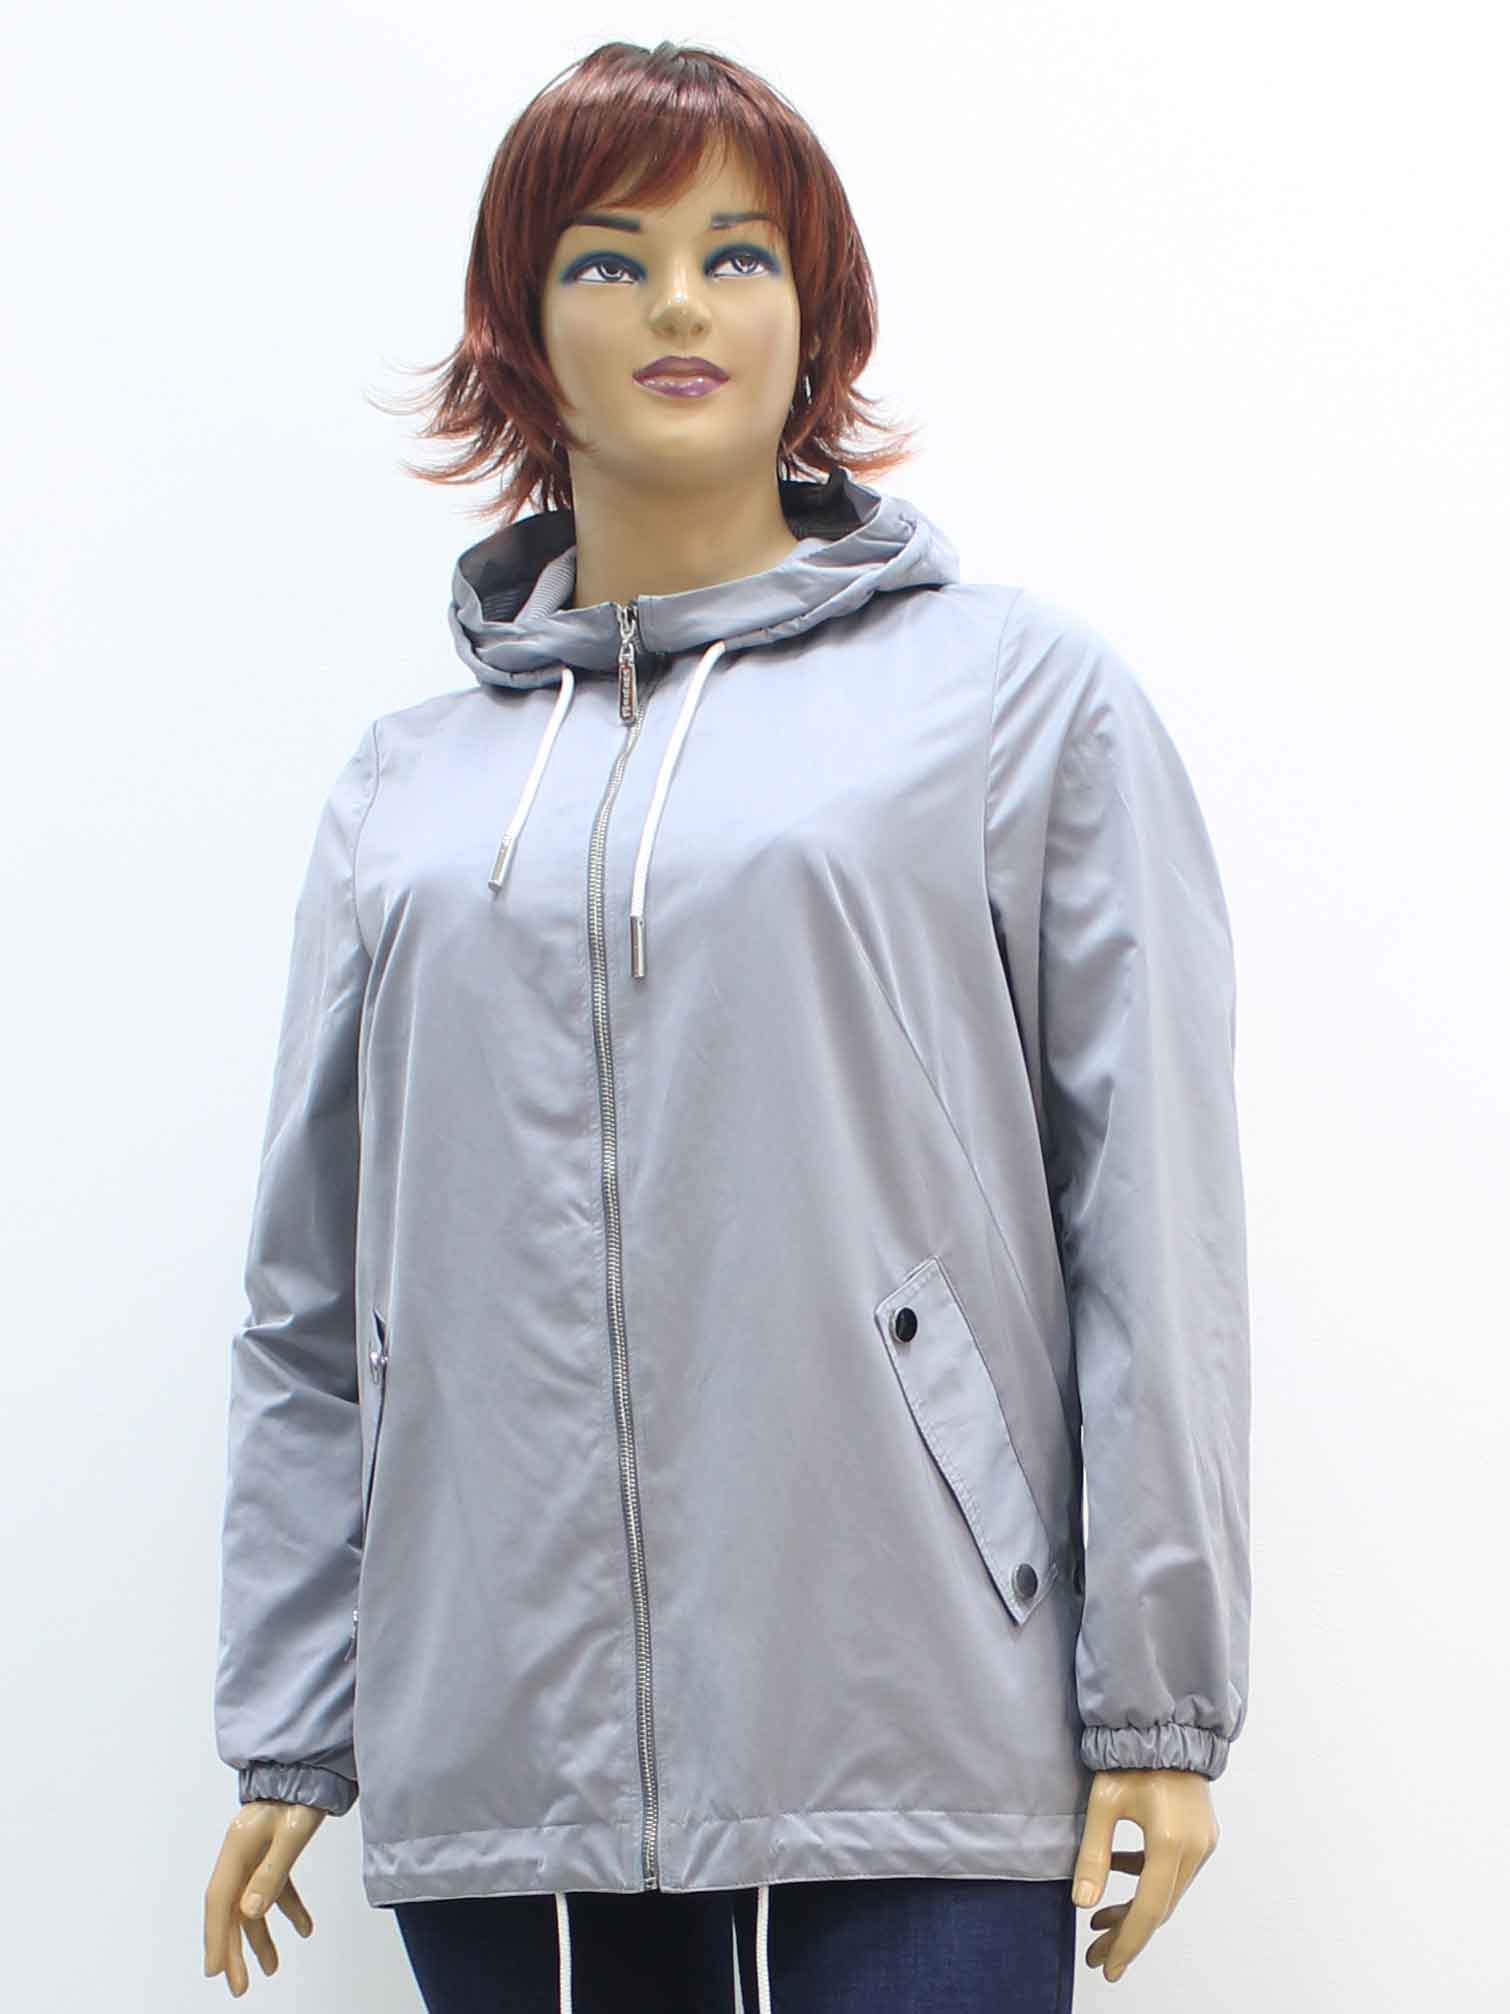 Куртка легкая женская из хлопка с капюшоном большого размера, 2020. Магазин «Пышная Дама», Луганск.